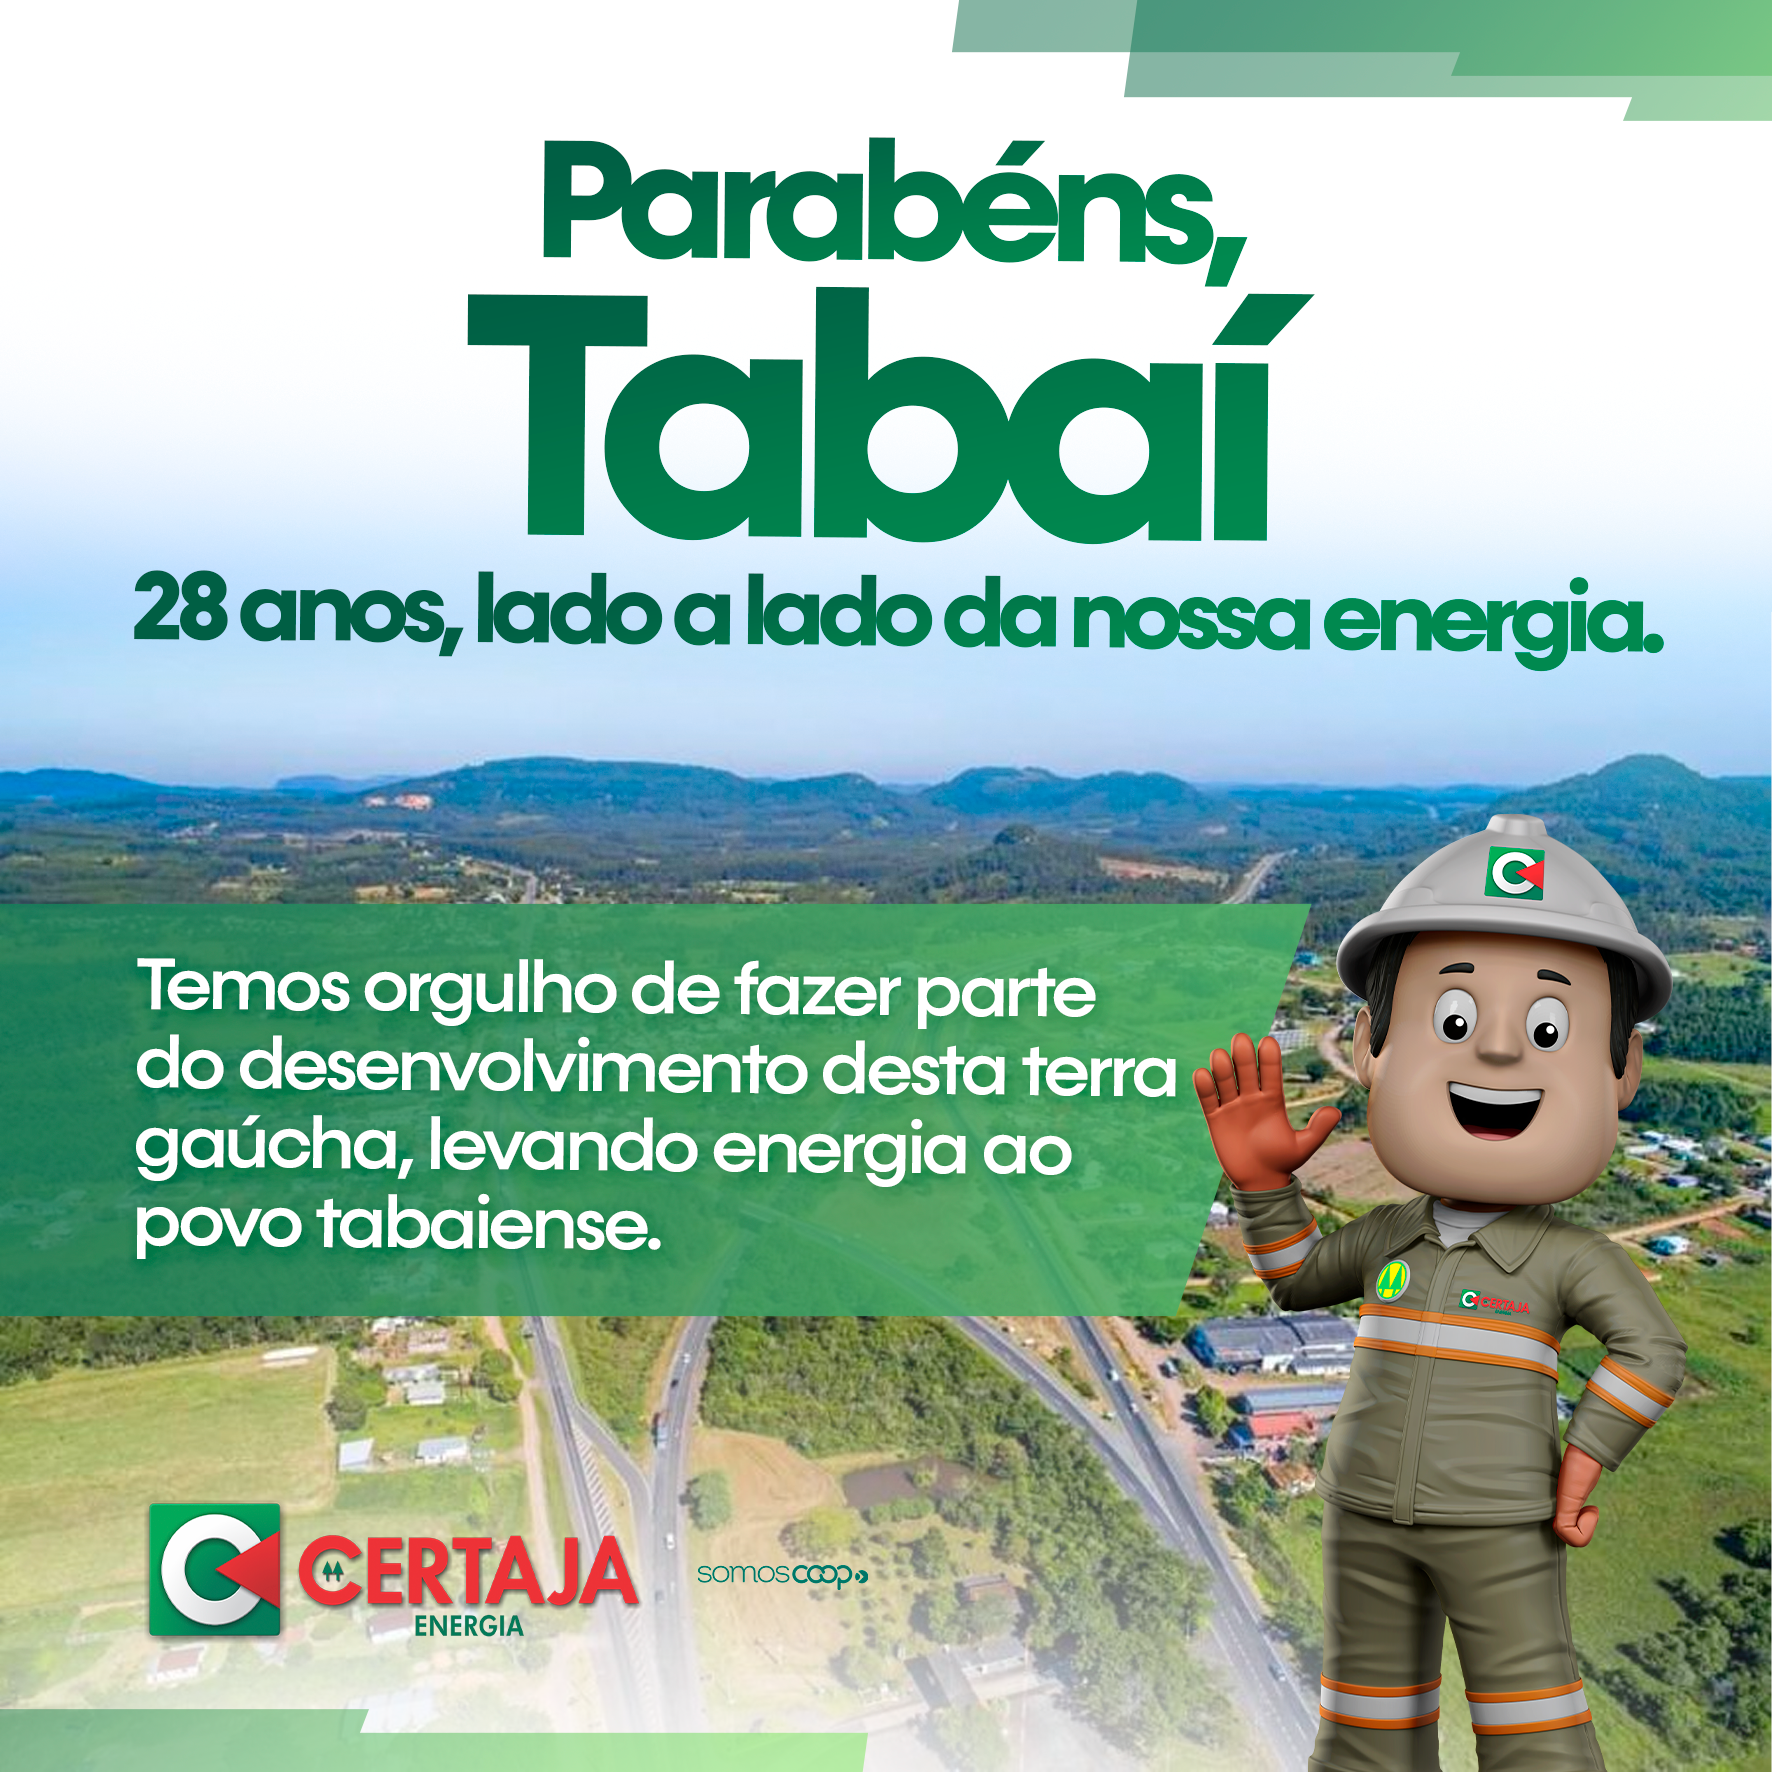 Foto: Ilustrativa / Divulgação: Homenagem da CERTAJA Energia para Tabaí